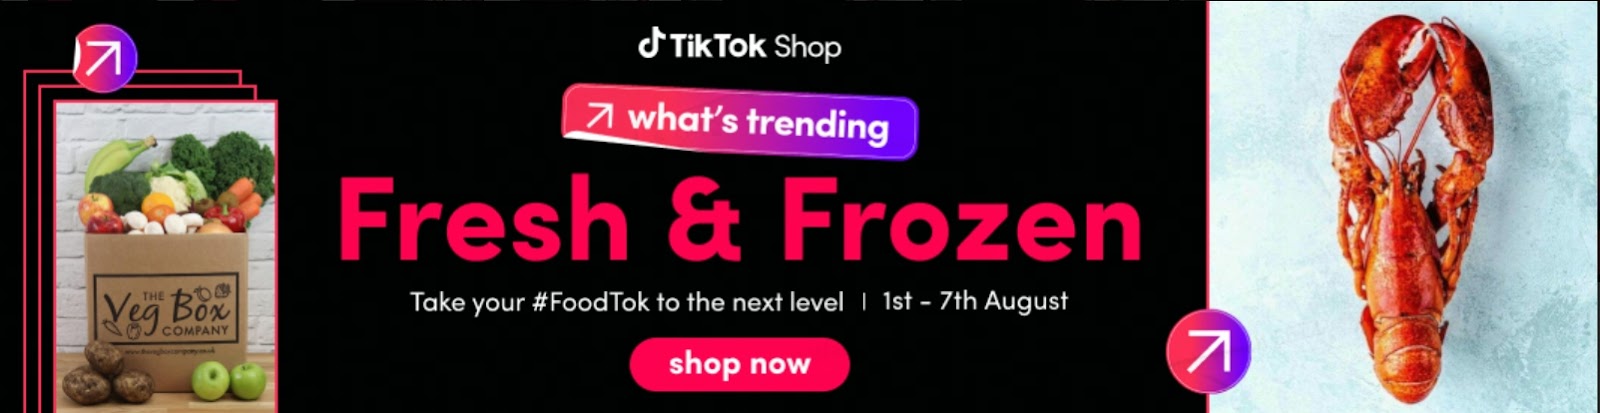 Tiktok thông báo cho phép bán thực phẩm tươi sống trên Tiktok Shop